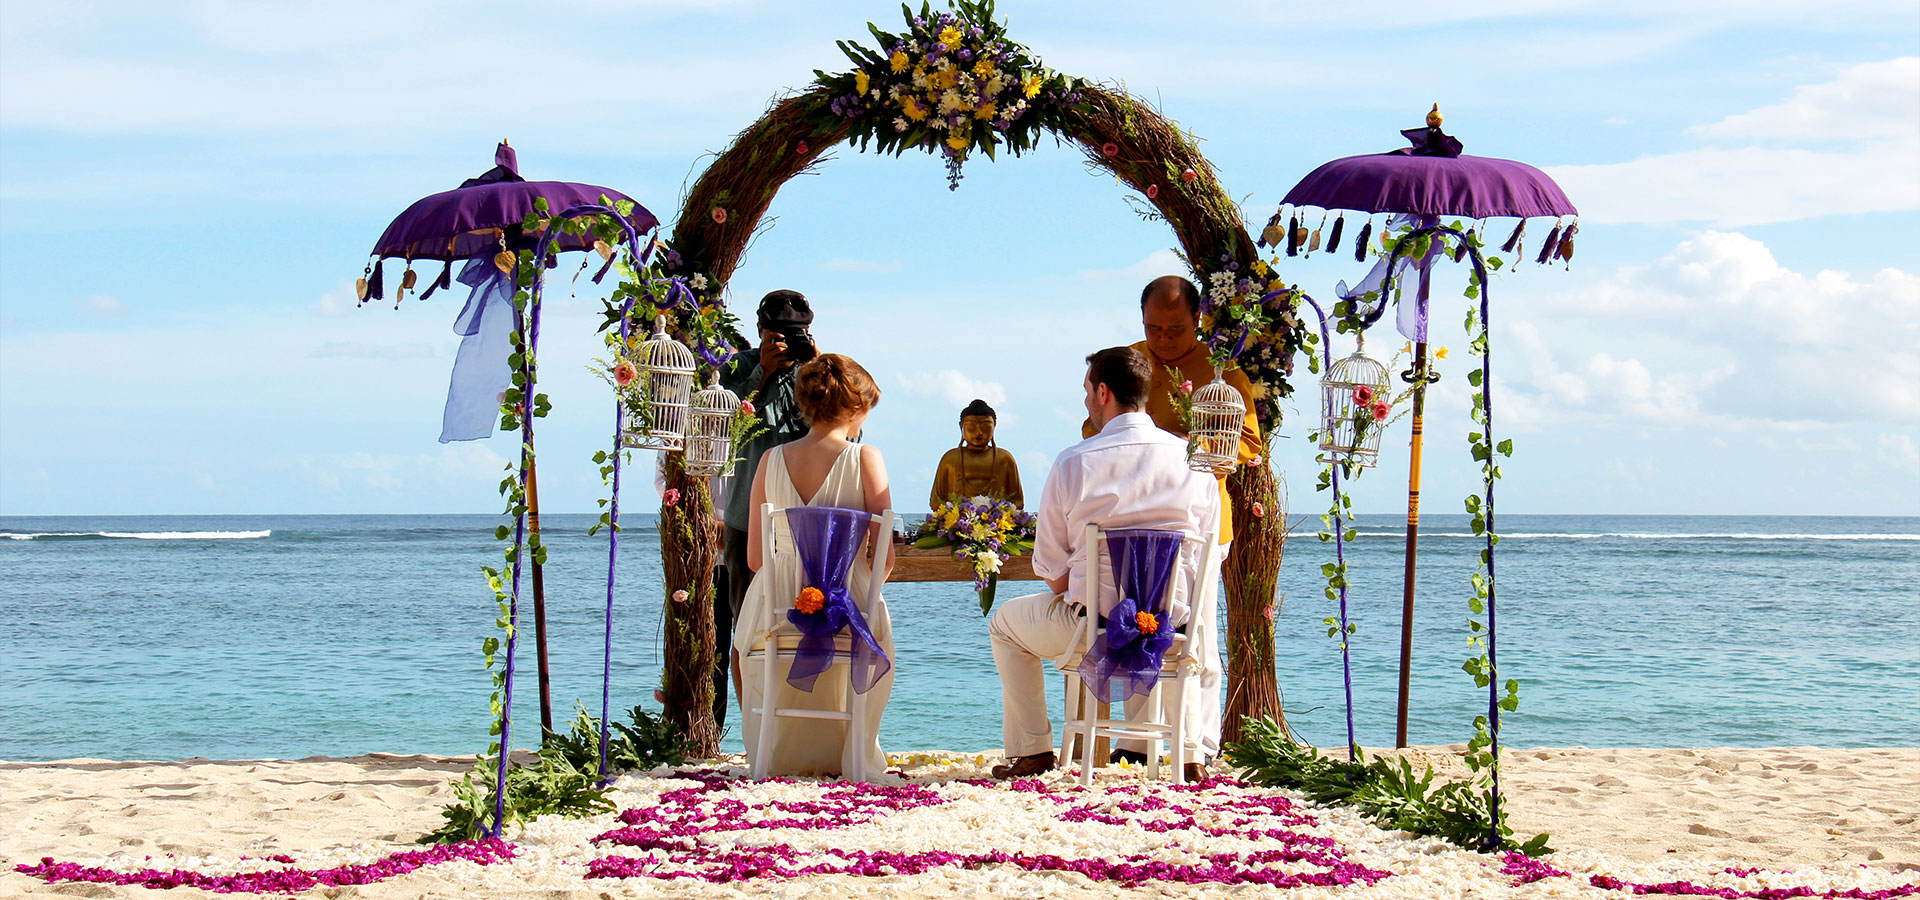 Местные уклады: традиционная свадьба на бали | balisha.ru — жизнь, люди, события и места острова бали